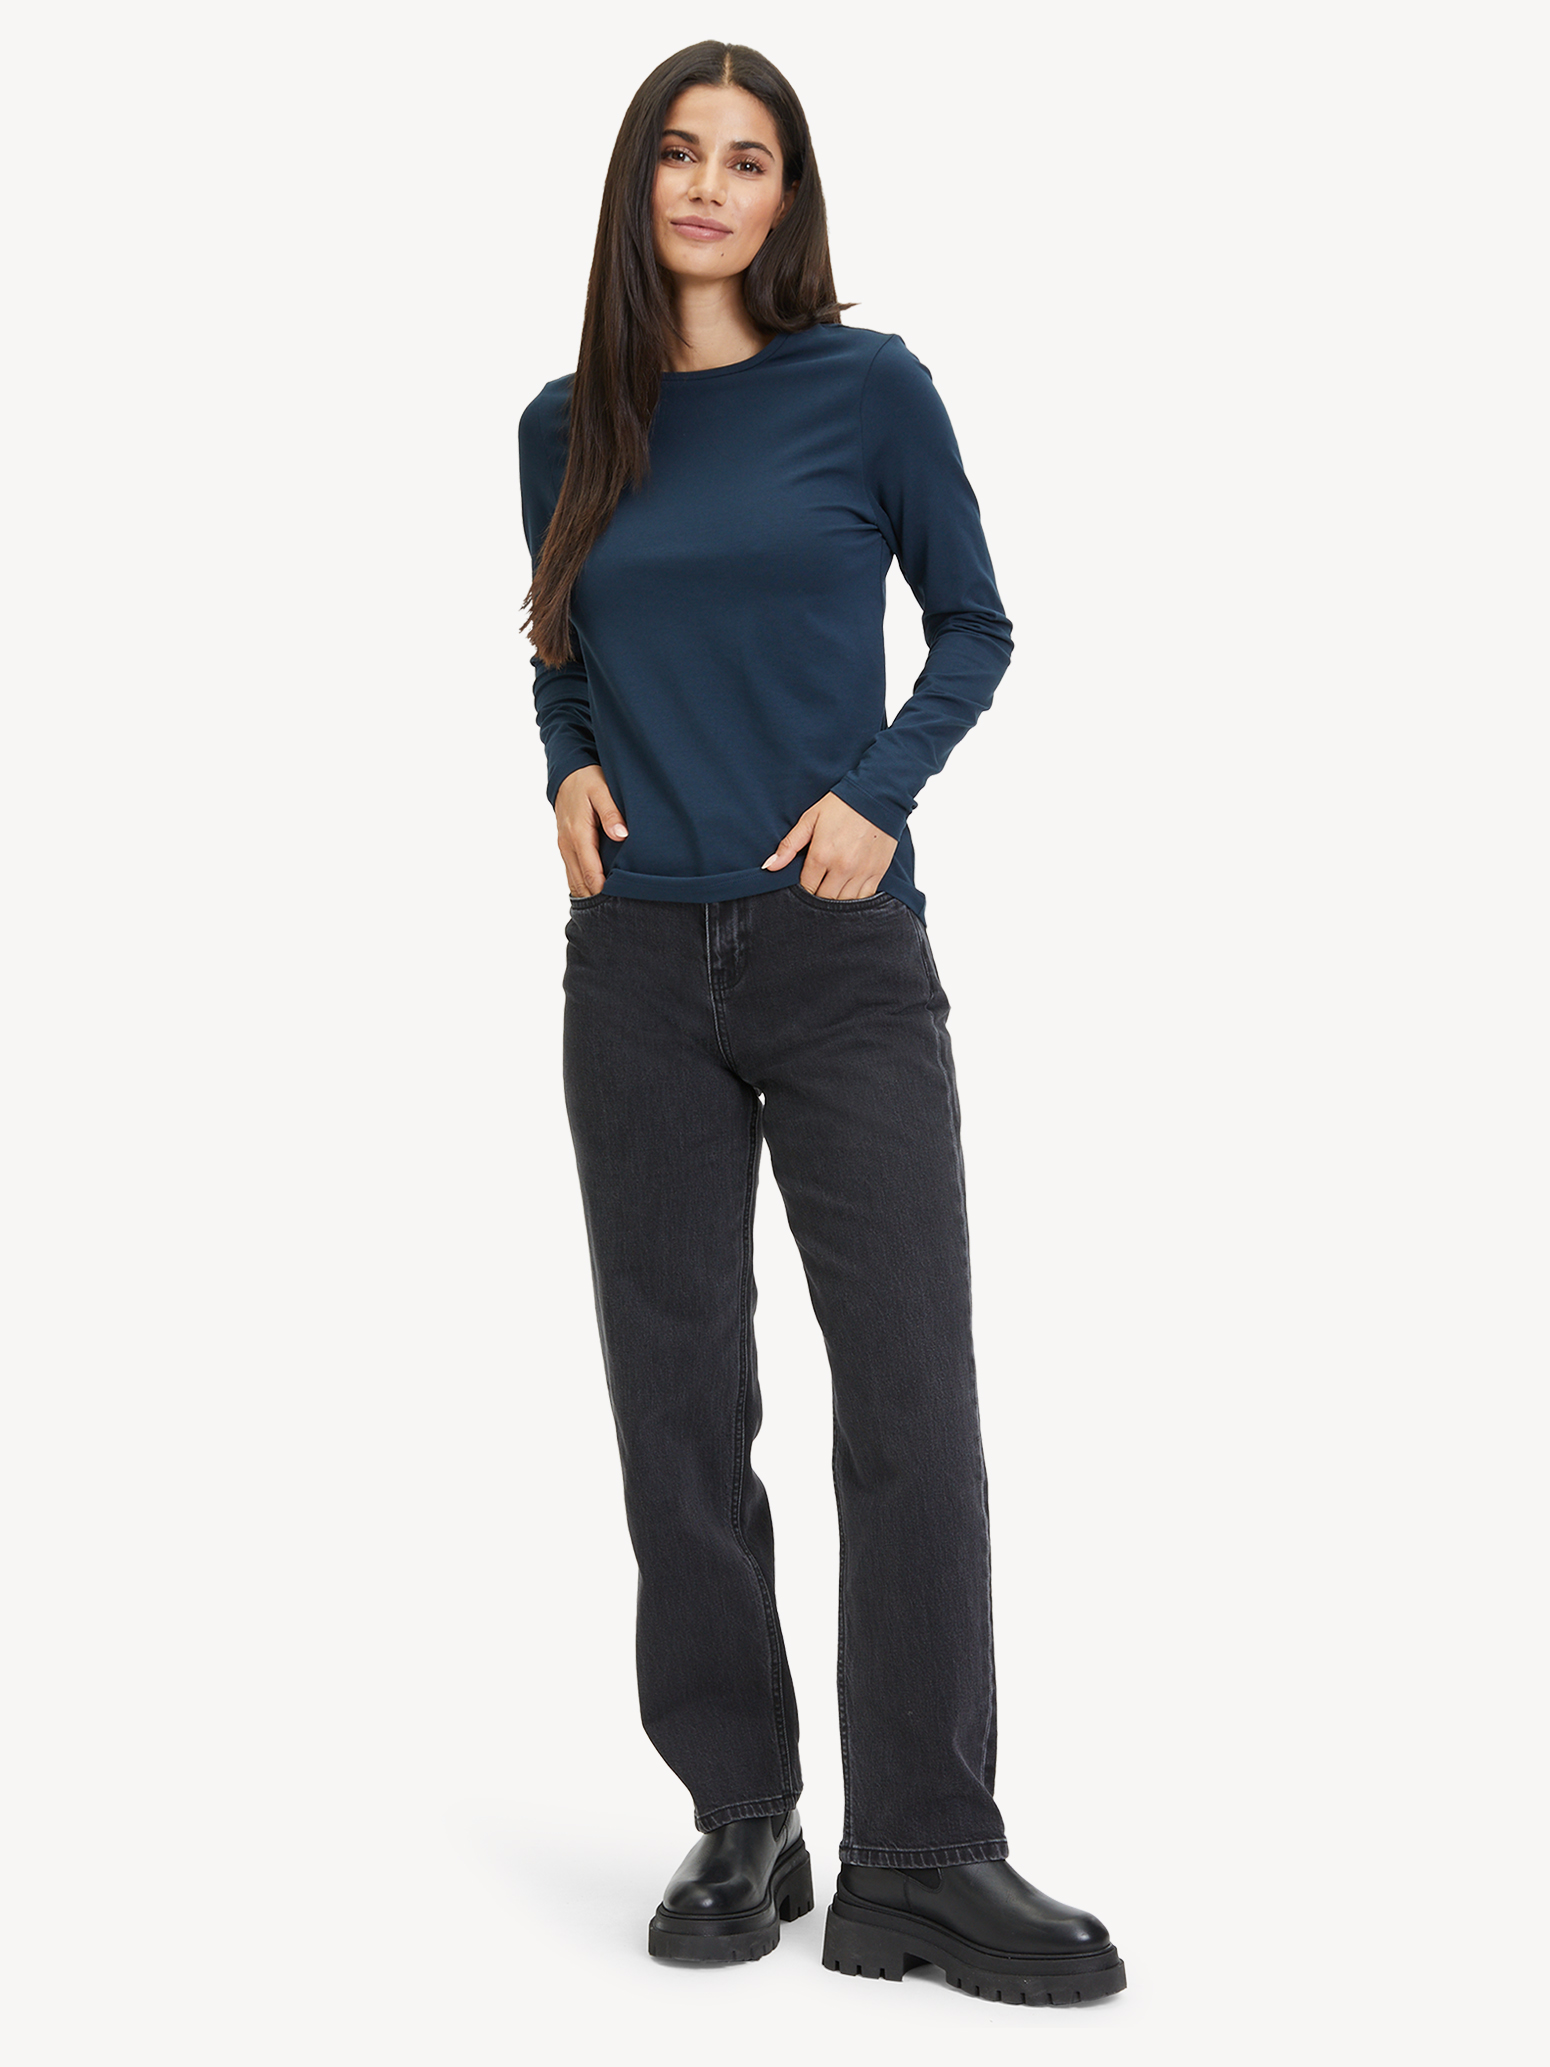 Langarmshirt - blau TAW0308-50059: & Sweatshirts Hoodies online kaufen! Tamaris